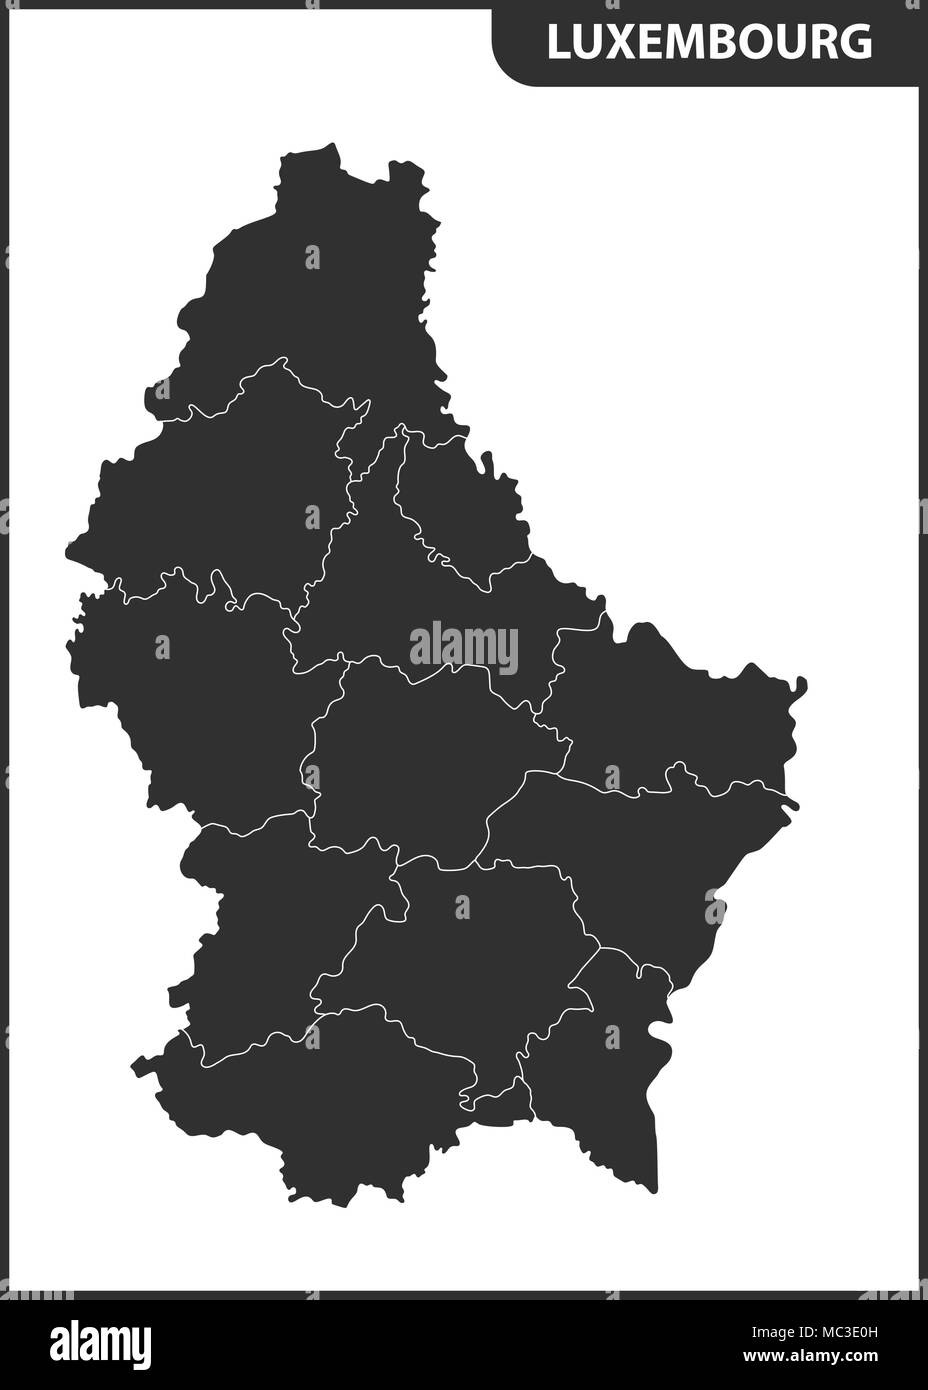 La carte détaillée du Luxembourg avec les régions ou états Illustration de Vecteur